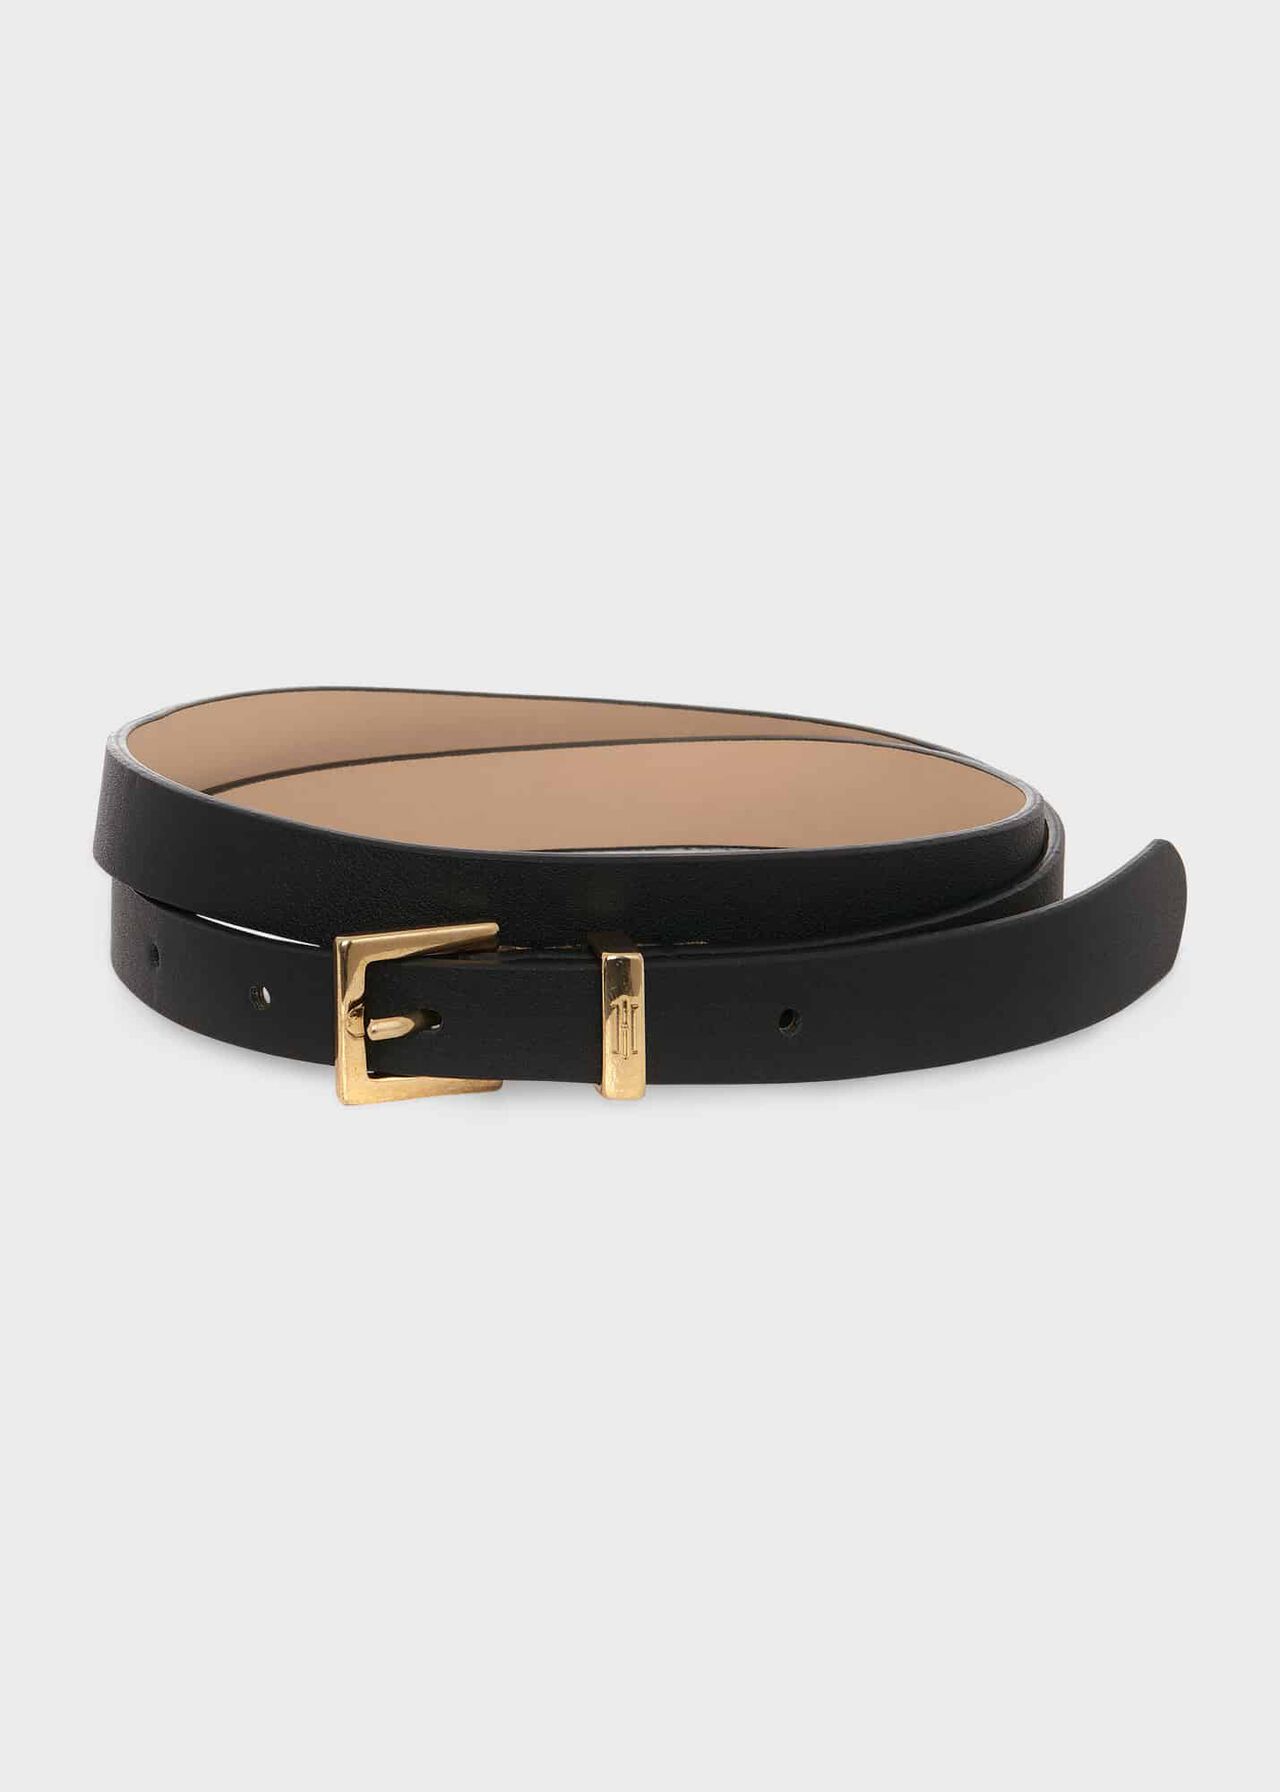 Norfolk Leather Belt, Black, hi-res